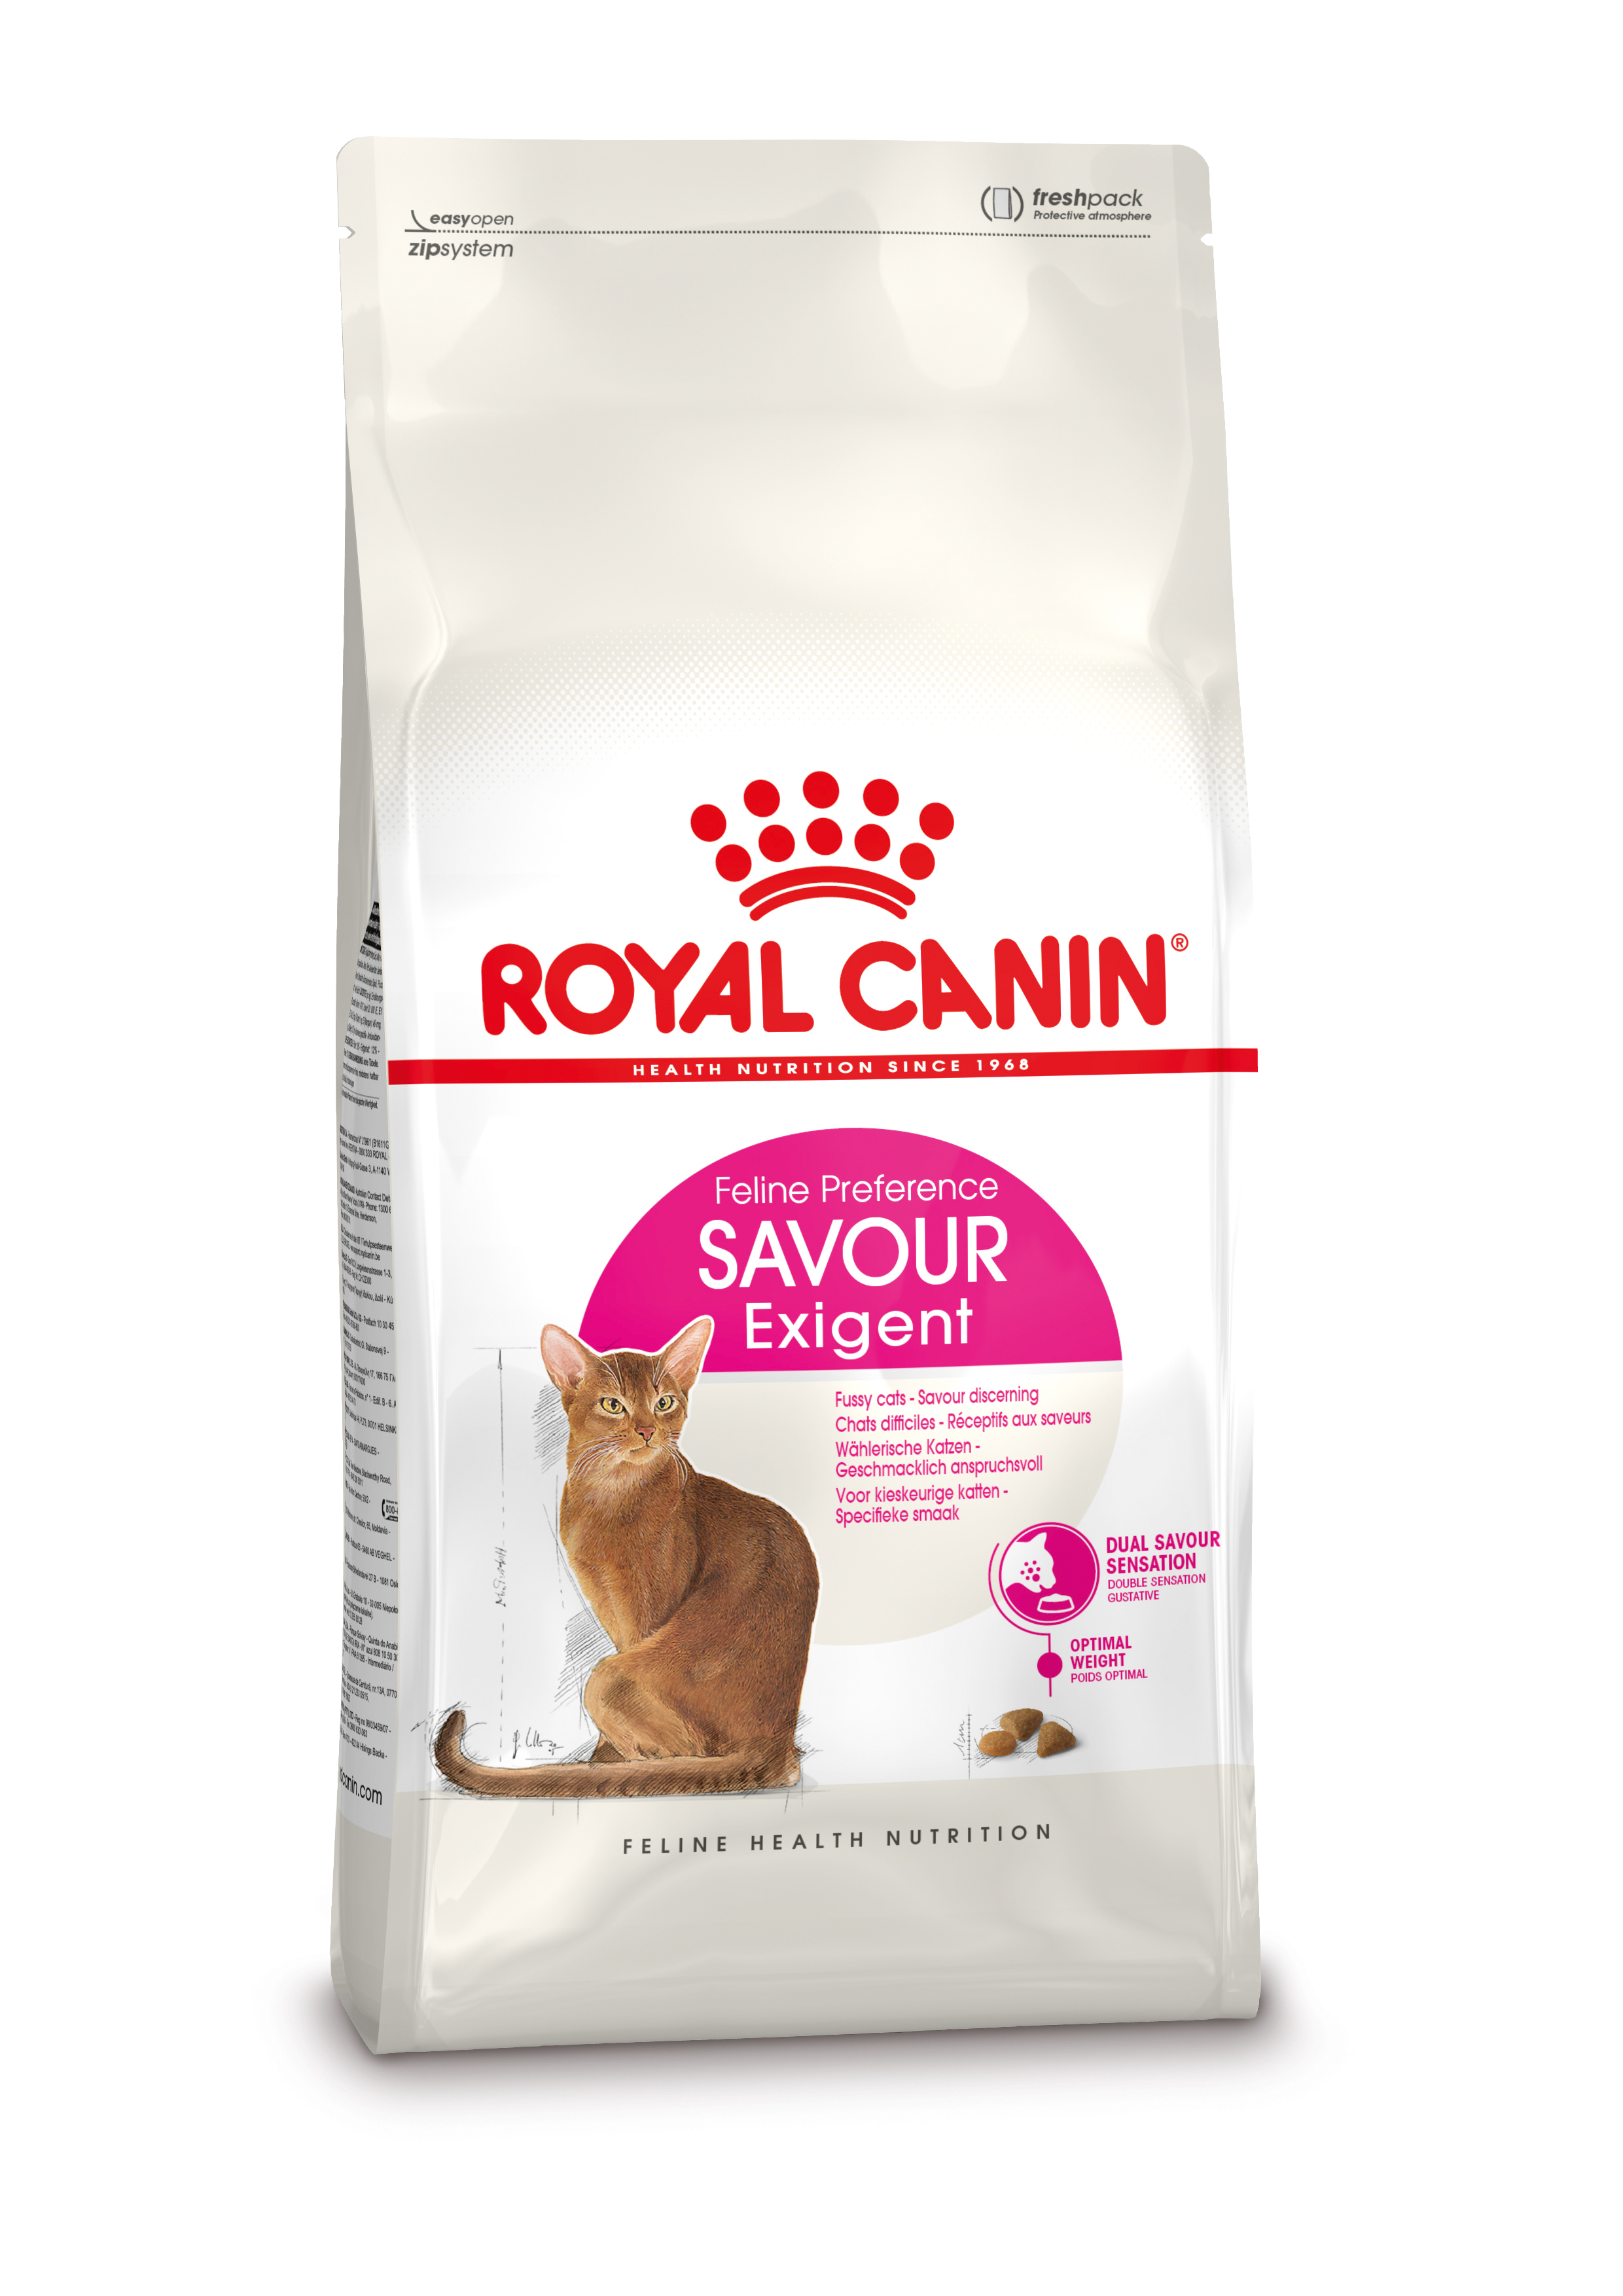 Afbeelding Royal Canin Savour Exigent kattenvoer 4 kg door Brekz.nl